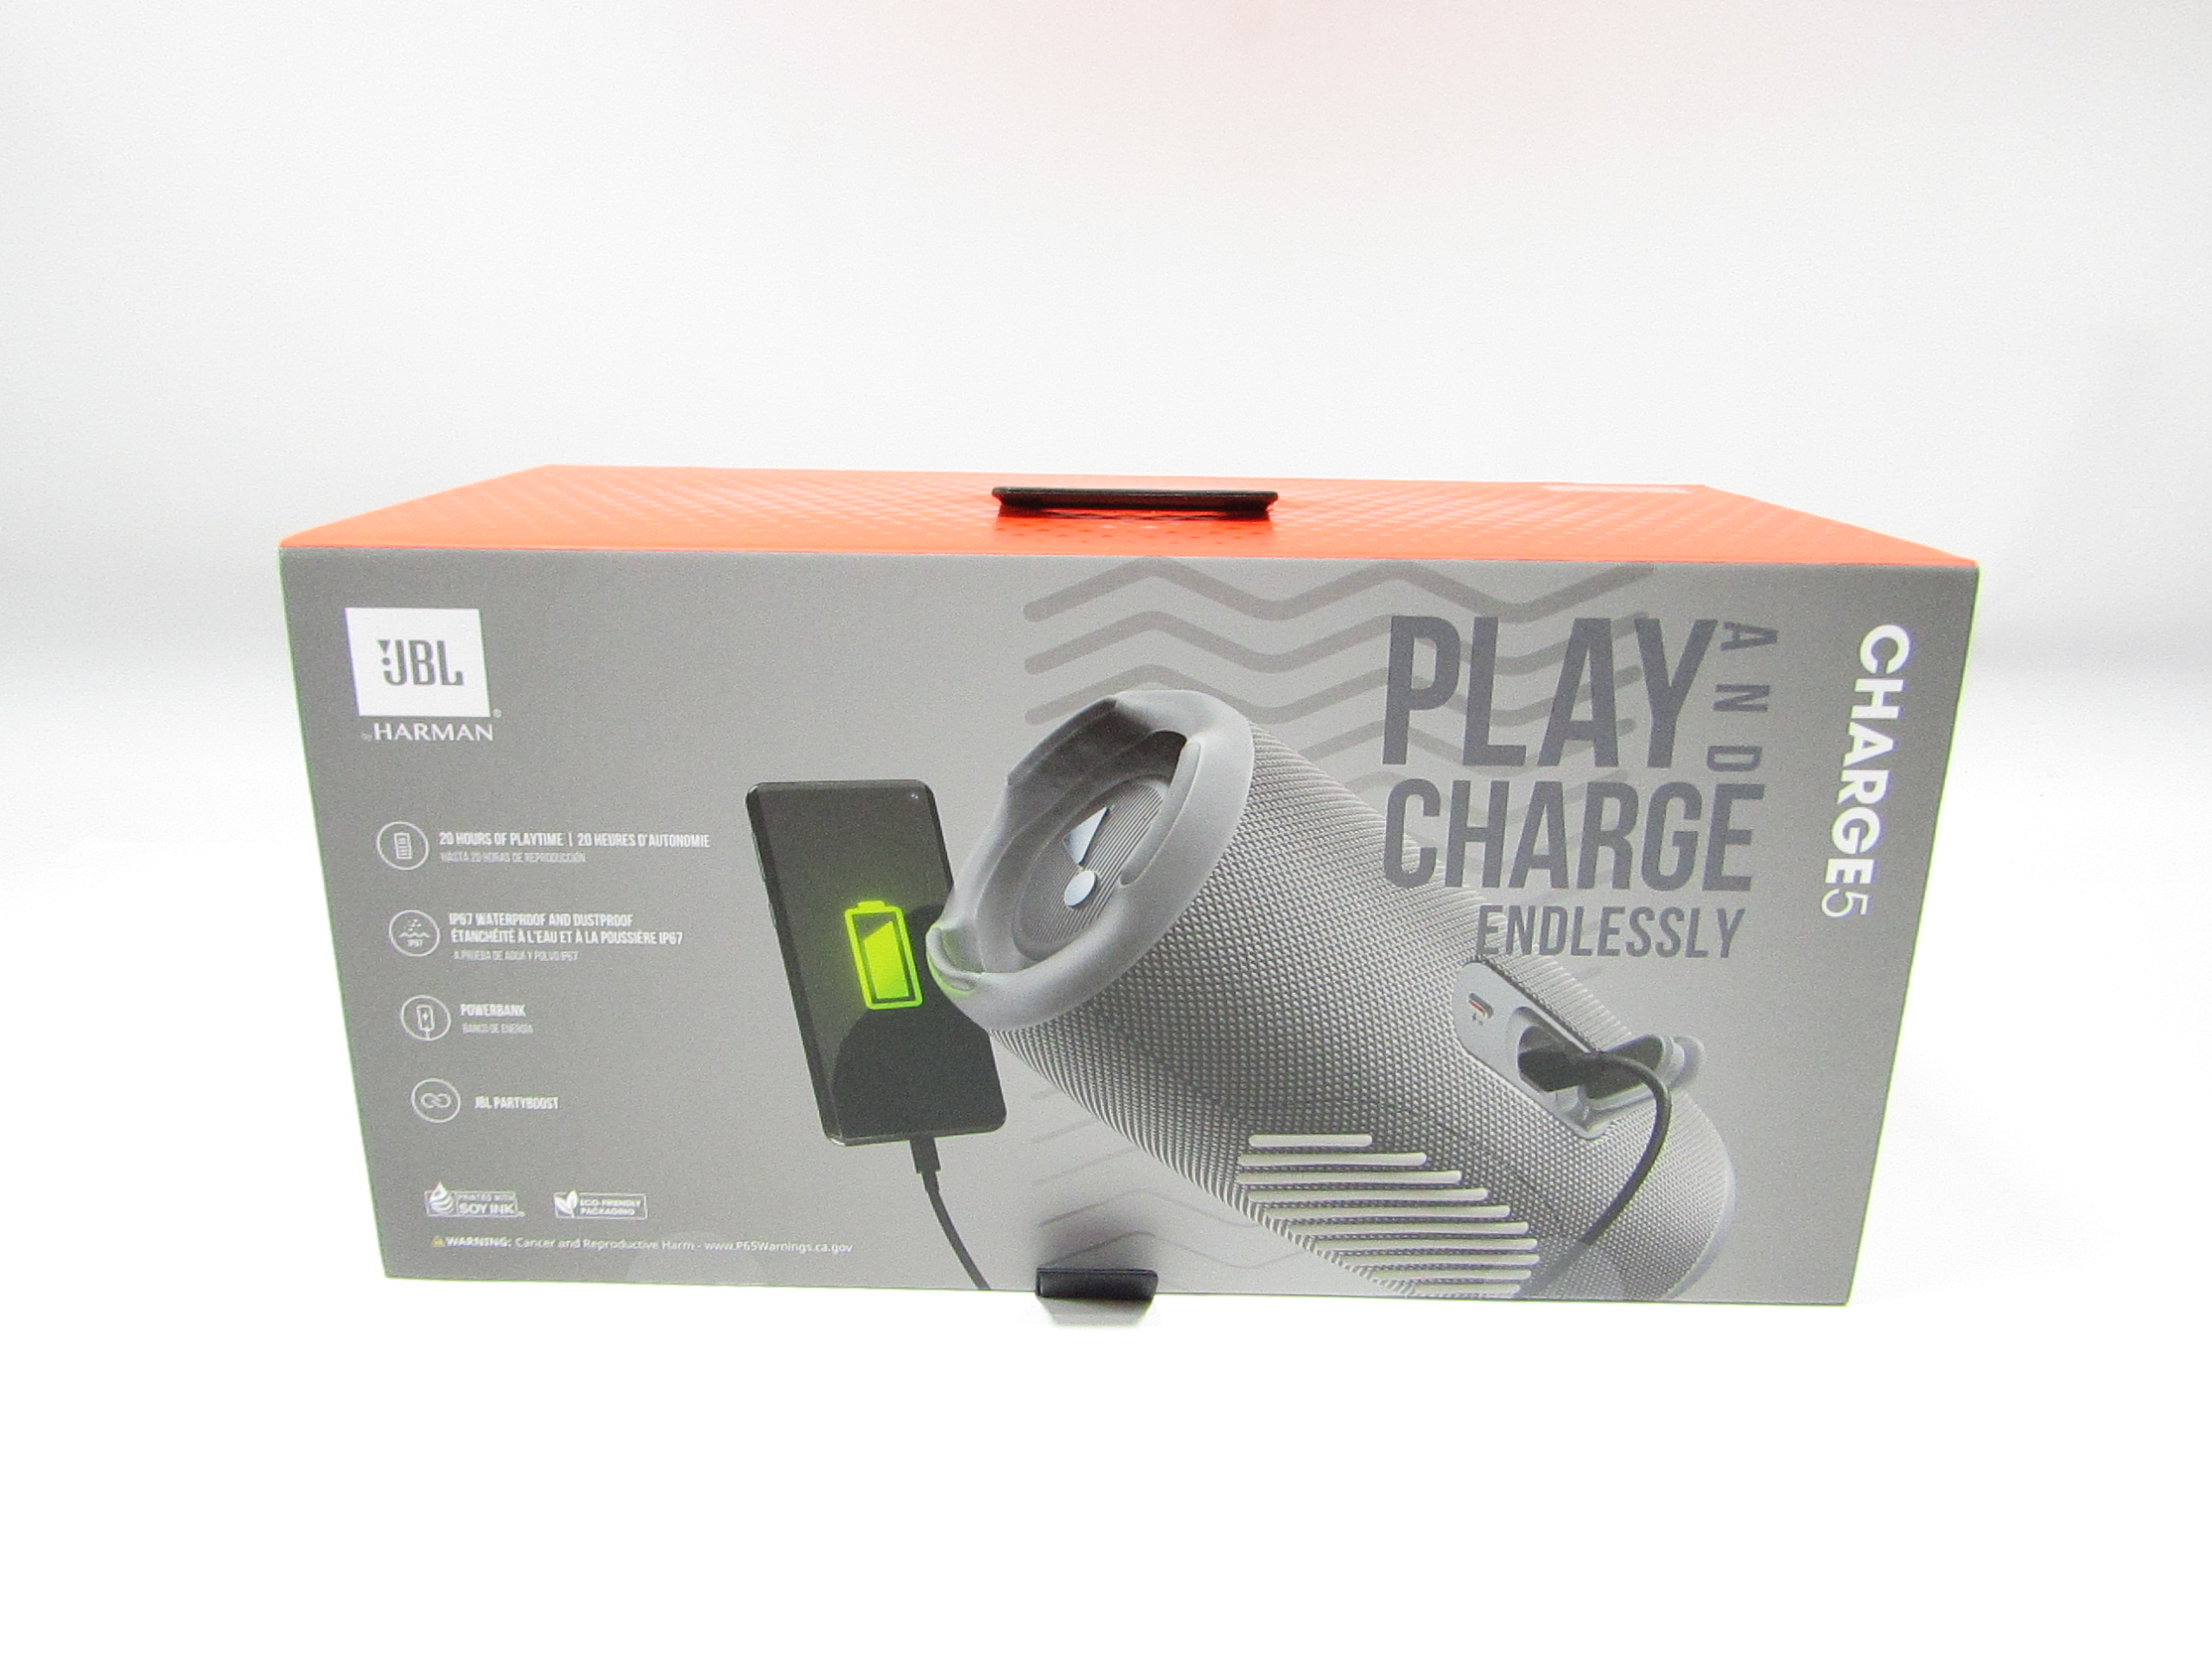 Jbl Charge 5 Portable Bluetooth Waterproof Speaker - Gray : Target